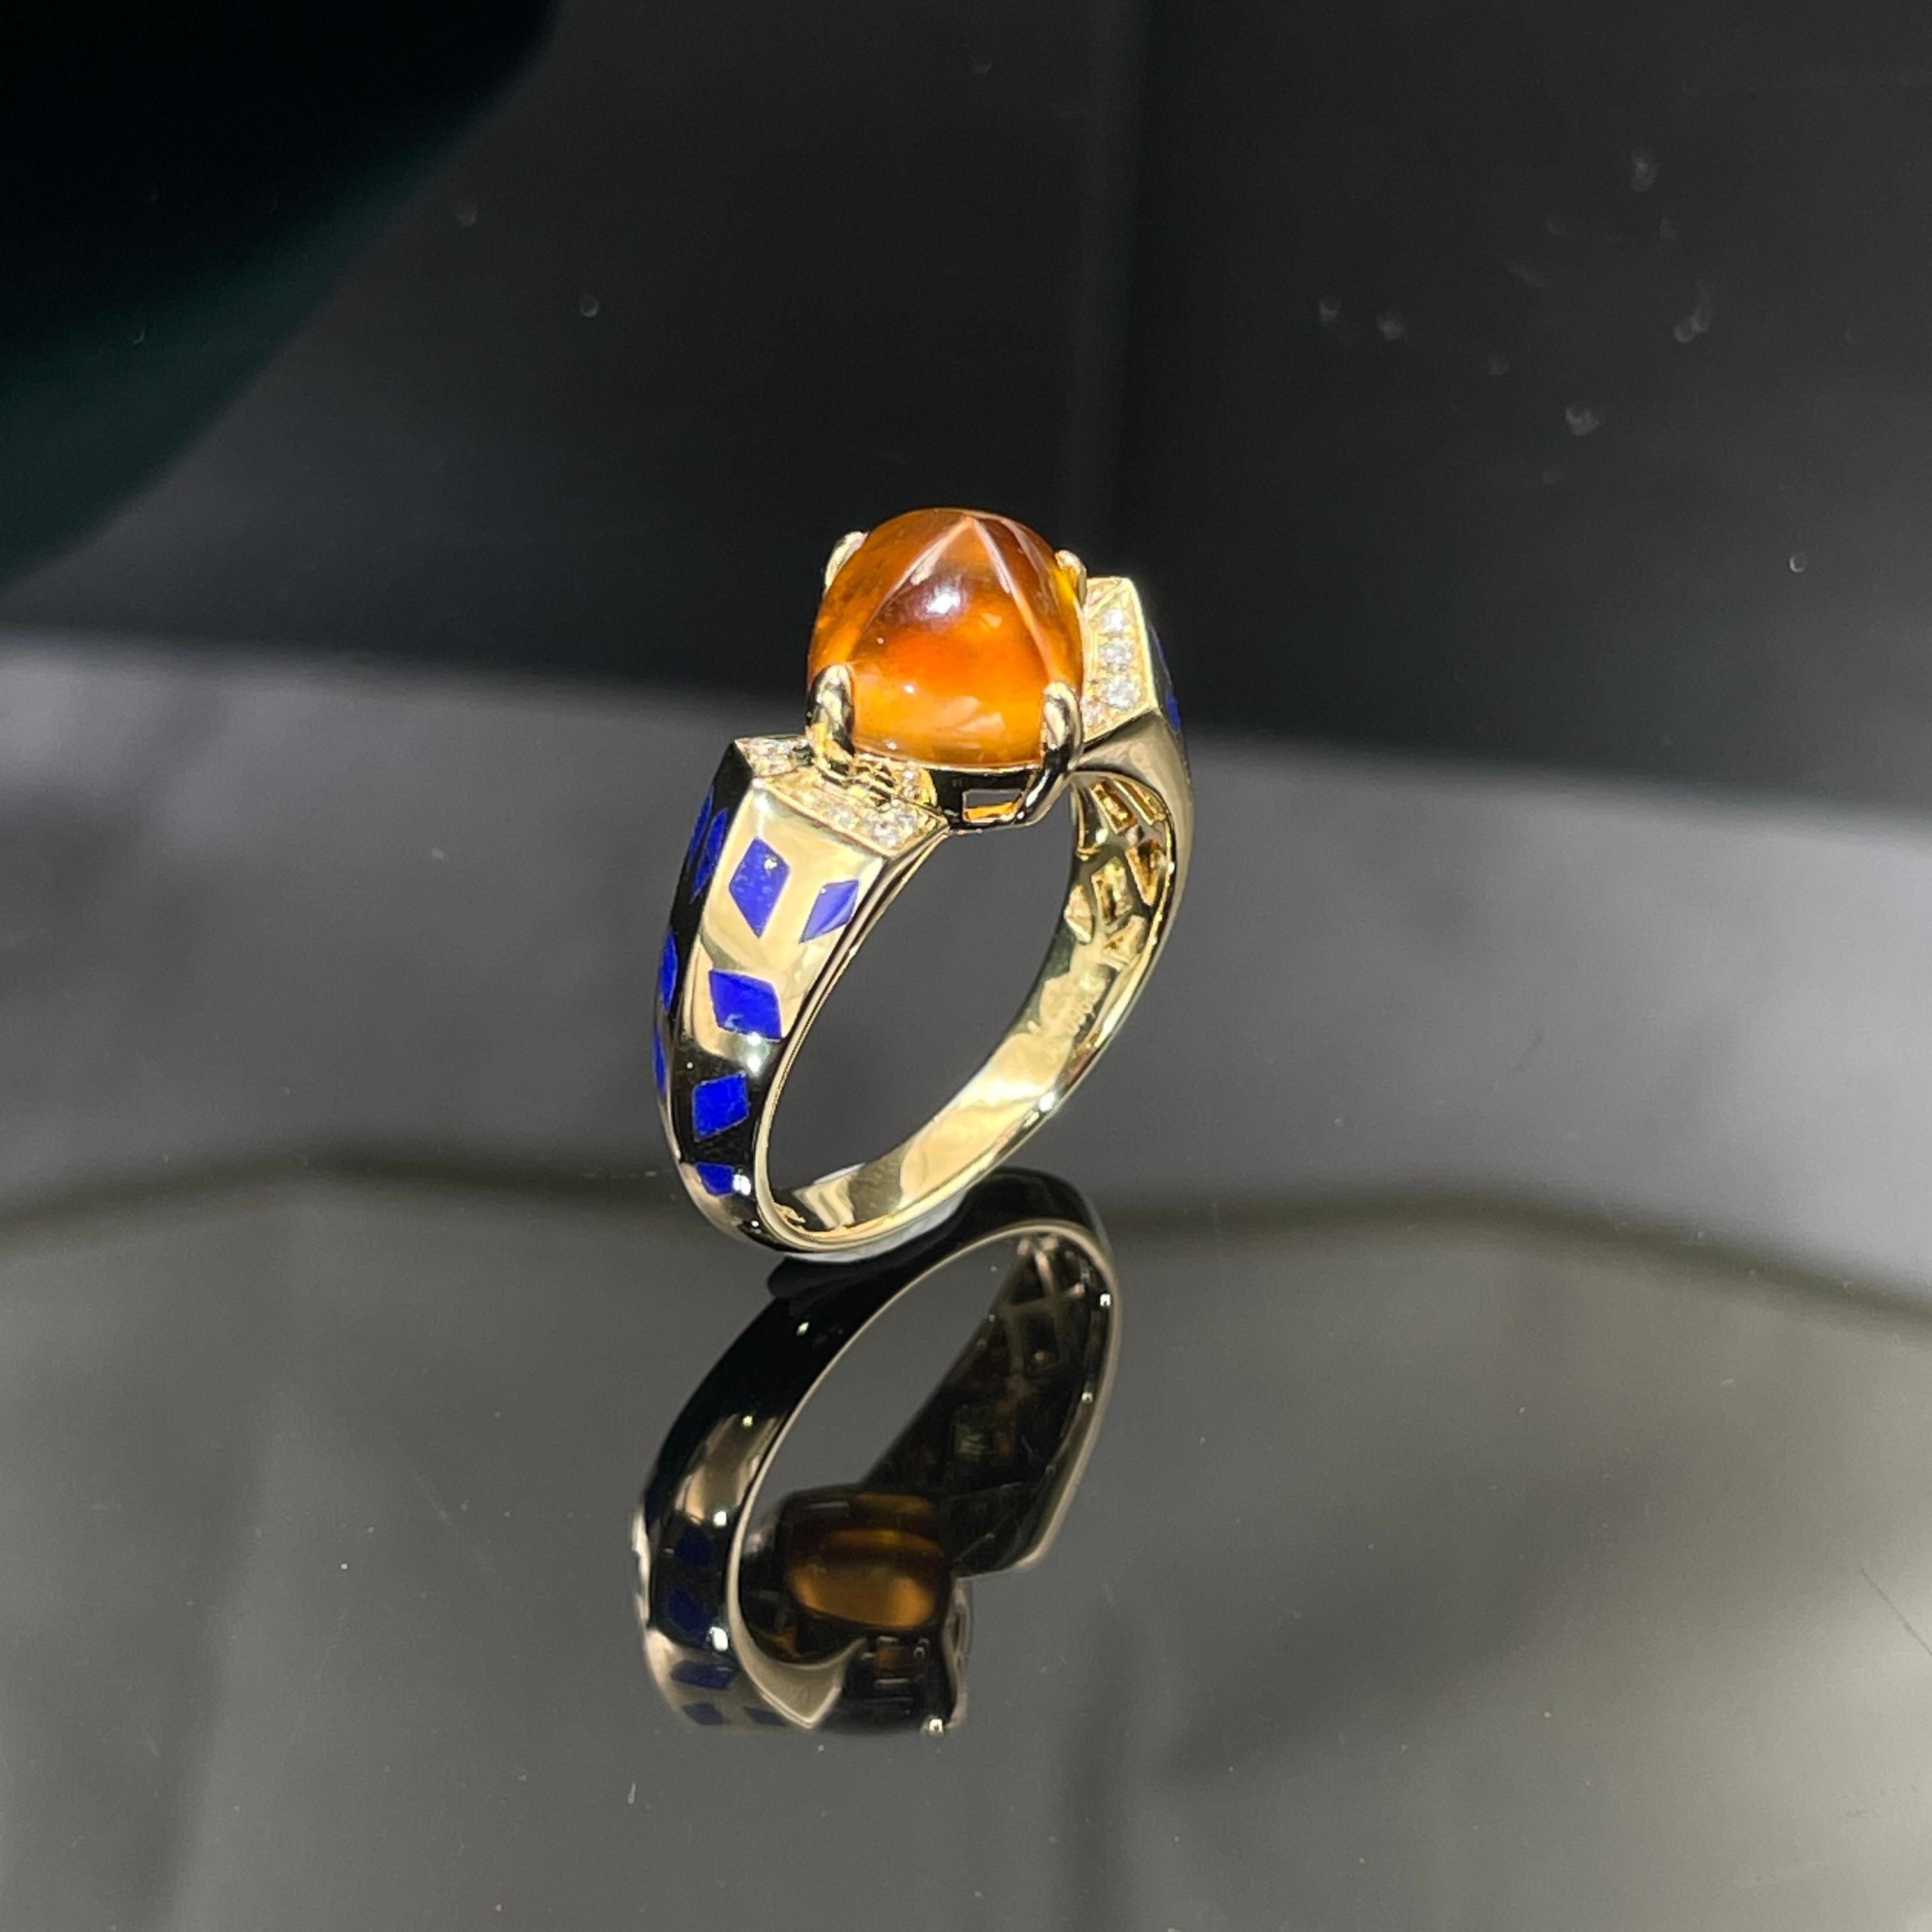 Dieser Ring ist ein Zuckerhut, der von der Cartier Sugarload Kollektion inspiriert ist. Der Mittelstein ist ein Fanta Farbe Spessartit Granat Zuckerhut durch 4 18K Gelbgold Klauen gesichert. Es ist dann in 2 geometrische Plattform mit Diamanten